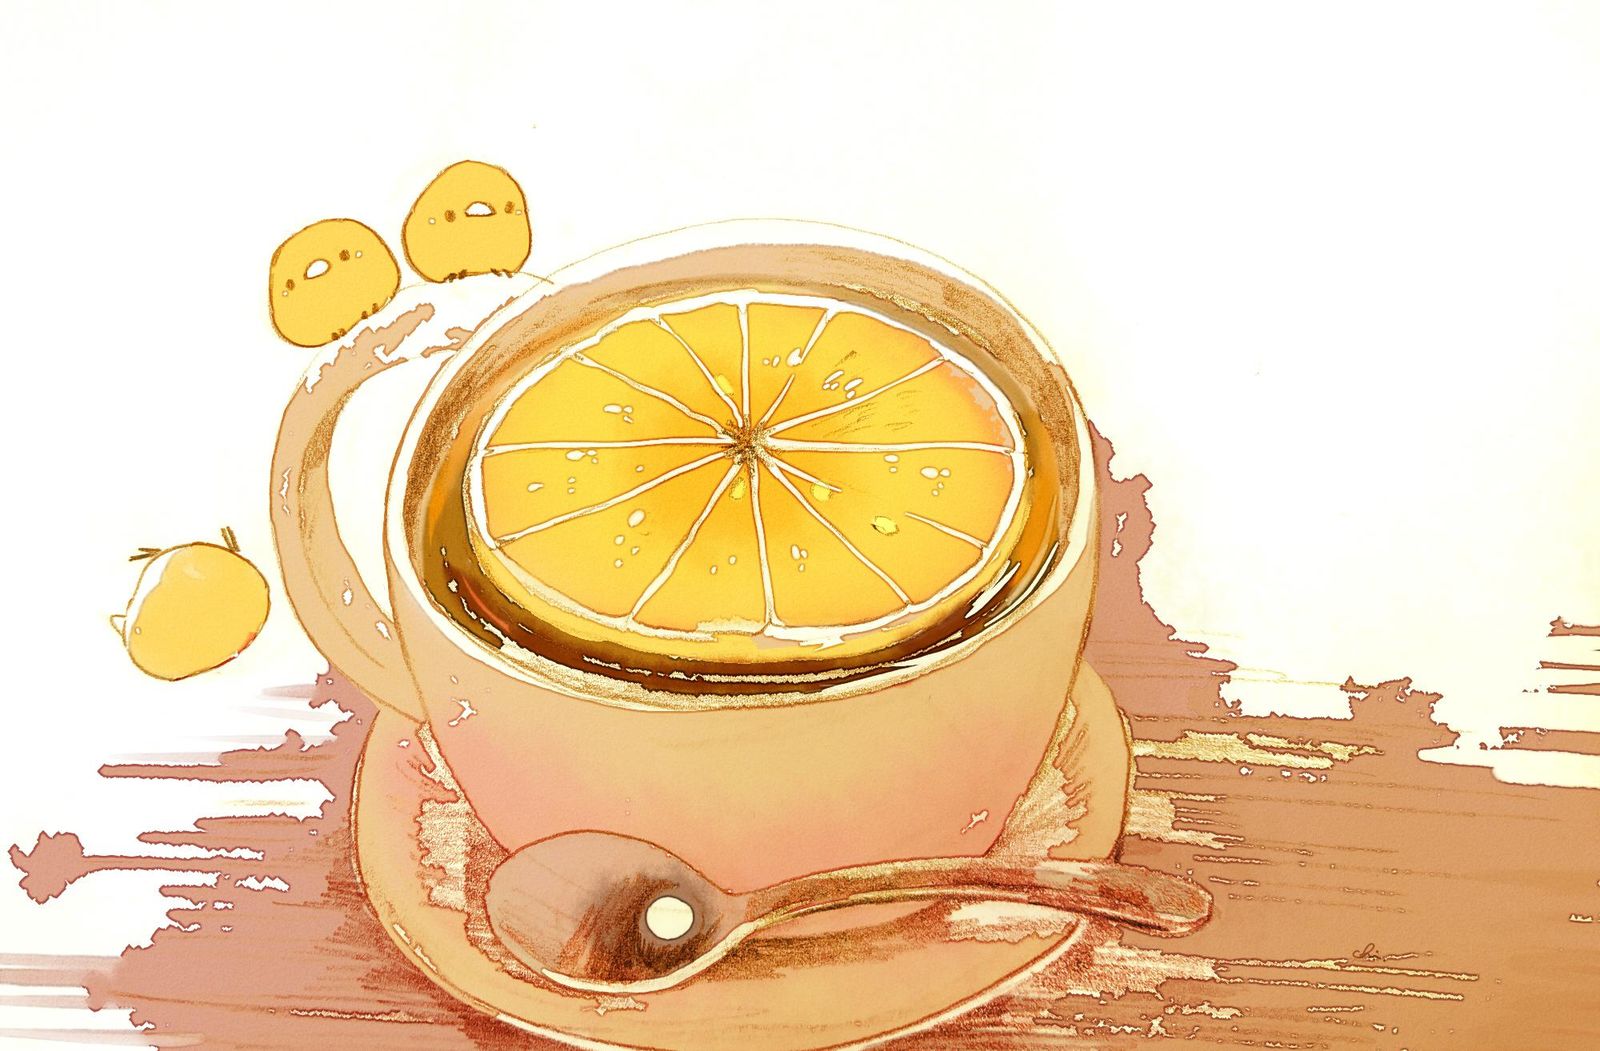 柠檬茶插画图片壁纸